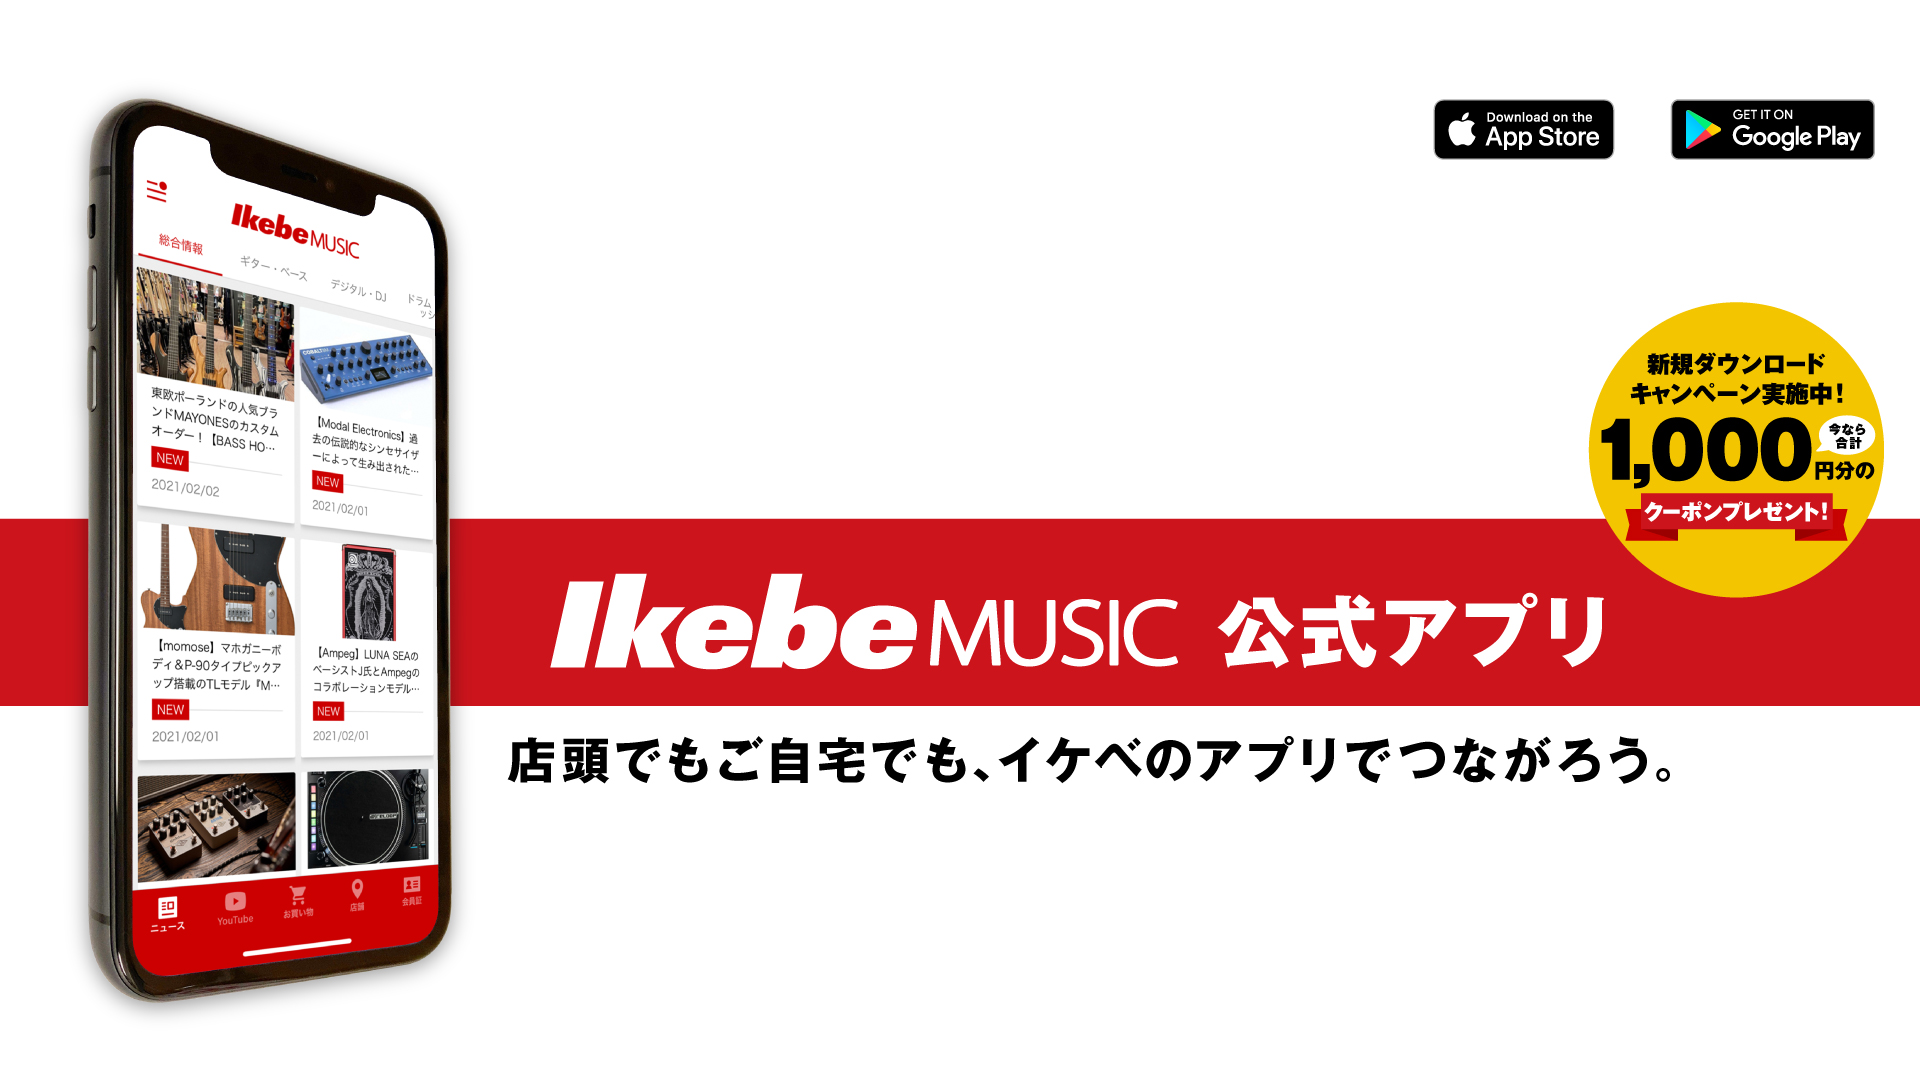 ついに、IkebeMUSIC 公式アプリが登場！ - 店頭でもご自宅でも、イケベのアプリでつながろう。